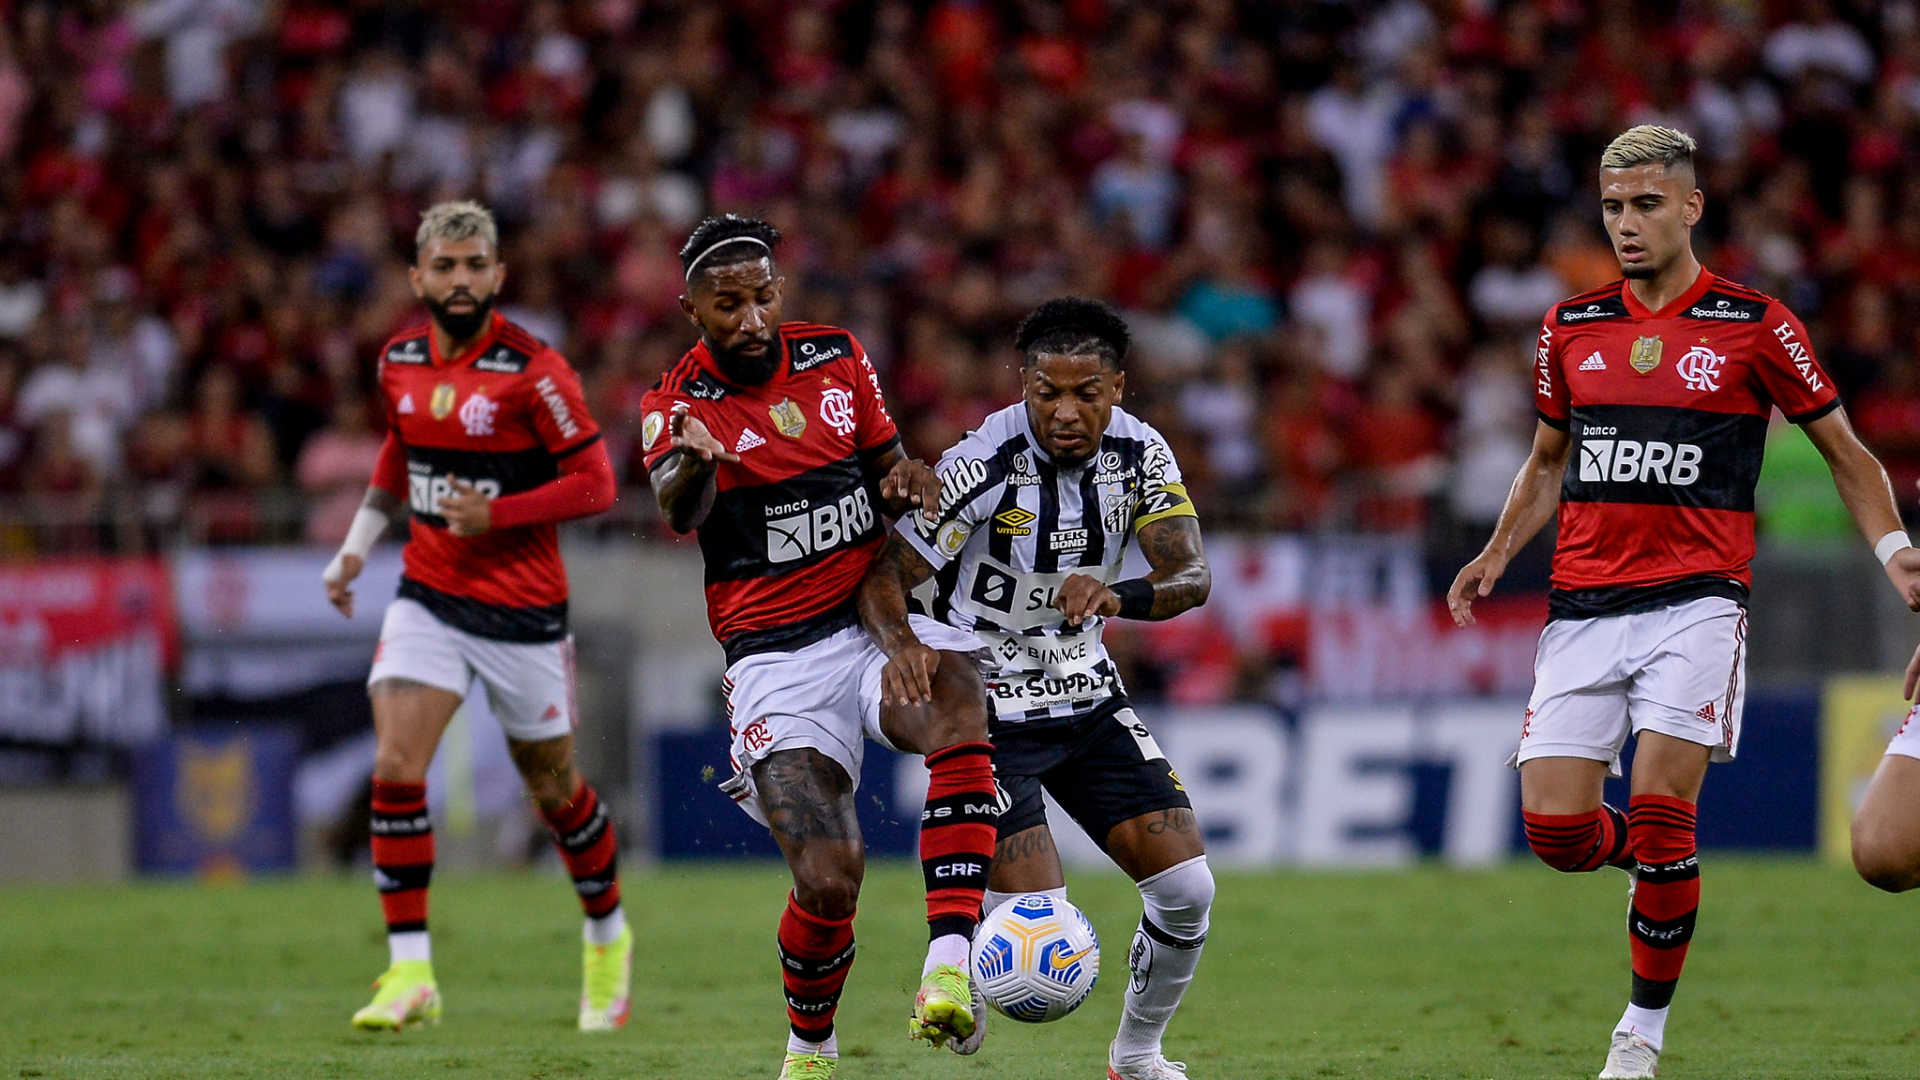 Brilhou no Brasileirão, ficou na mira de grandes clubes e agora vai jogar  no Flamengo